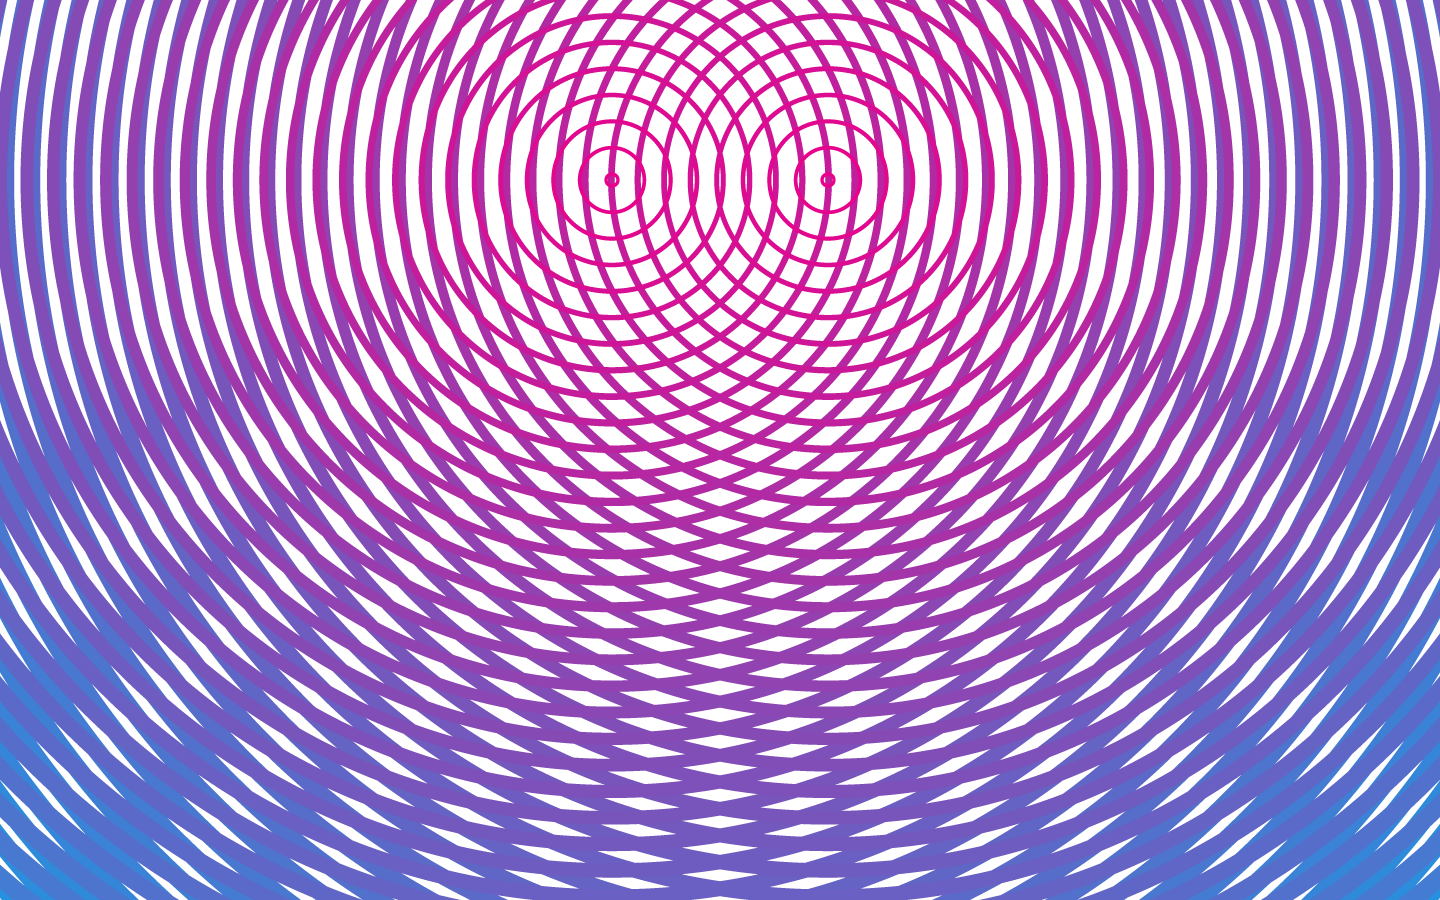 bewegliche optische täuschung tapete,lila,violett,linie,muster,symmetrie